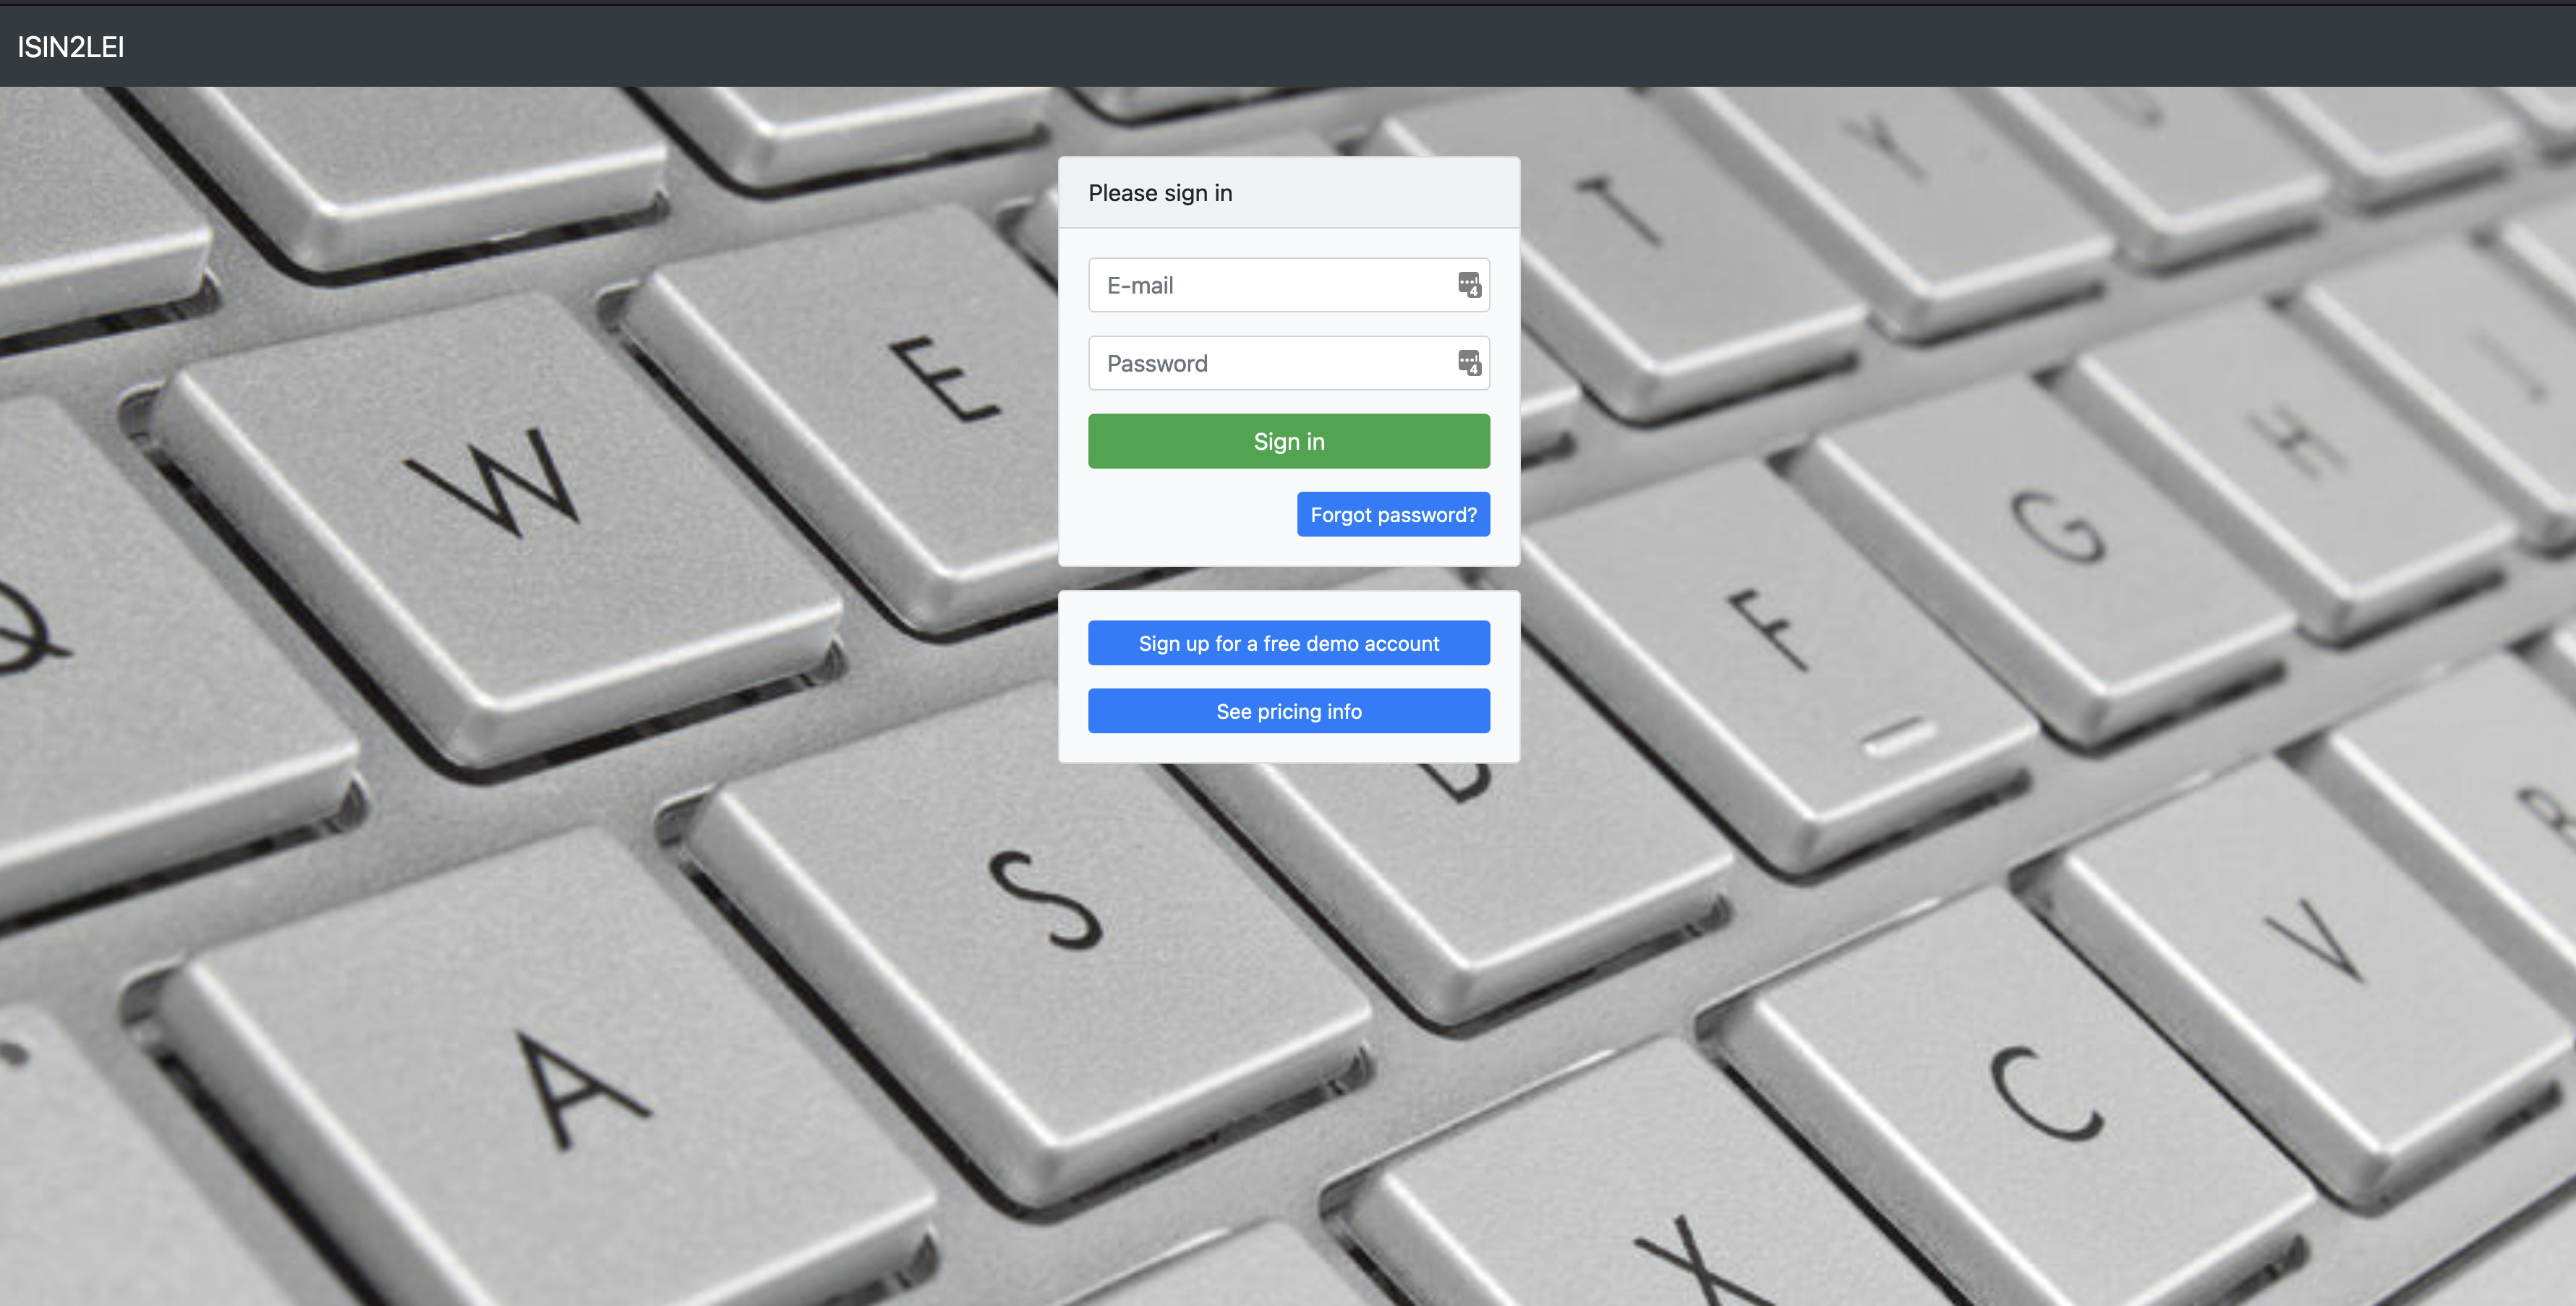 ISIN2LEI Portal: Geavanceerd Zoeken in Financiële Registraties